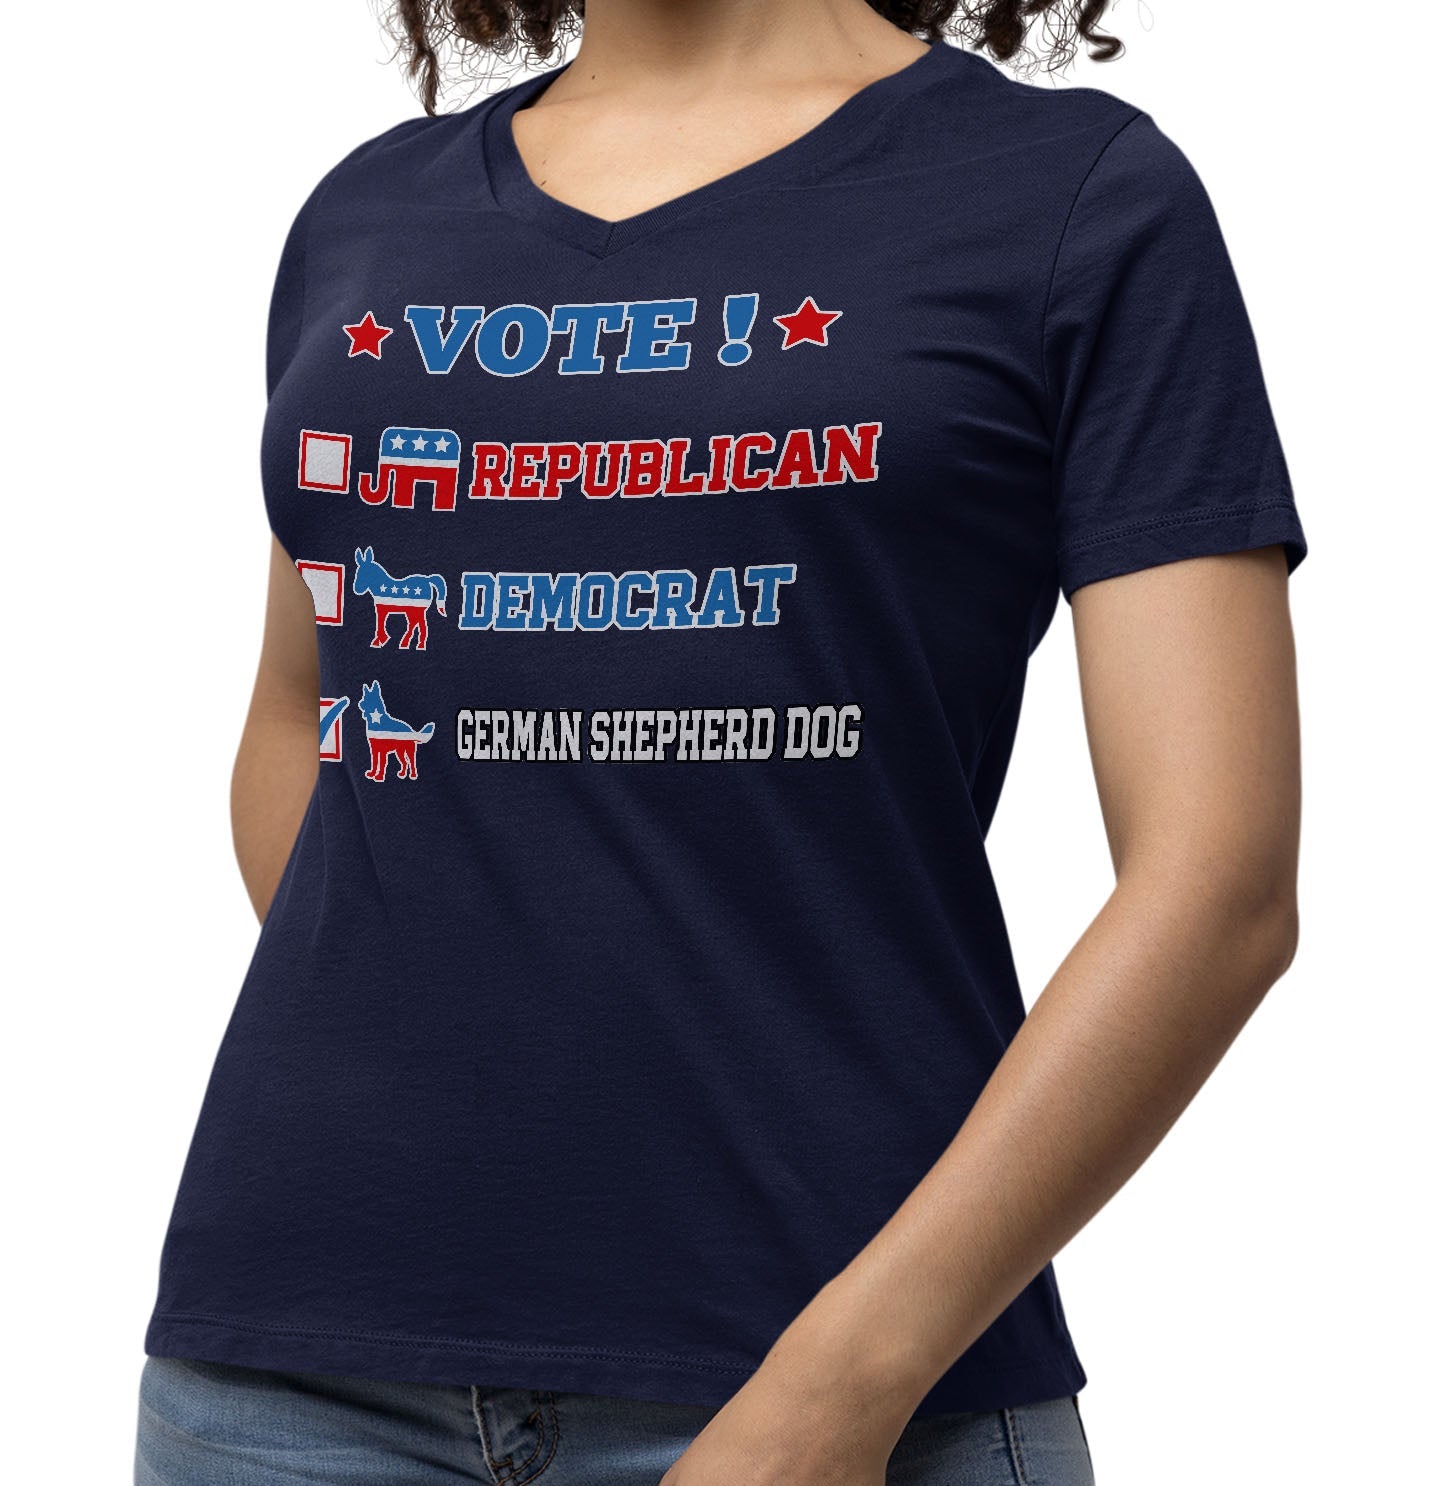 Vote for the German Shepherd Dog - Women's V-Neck T-Shirt